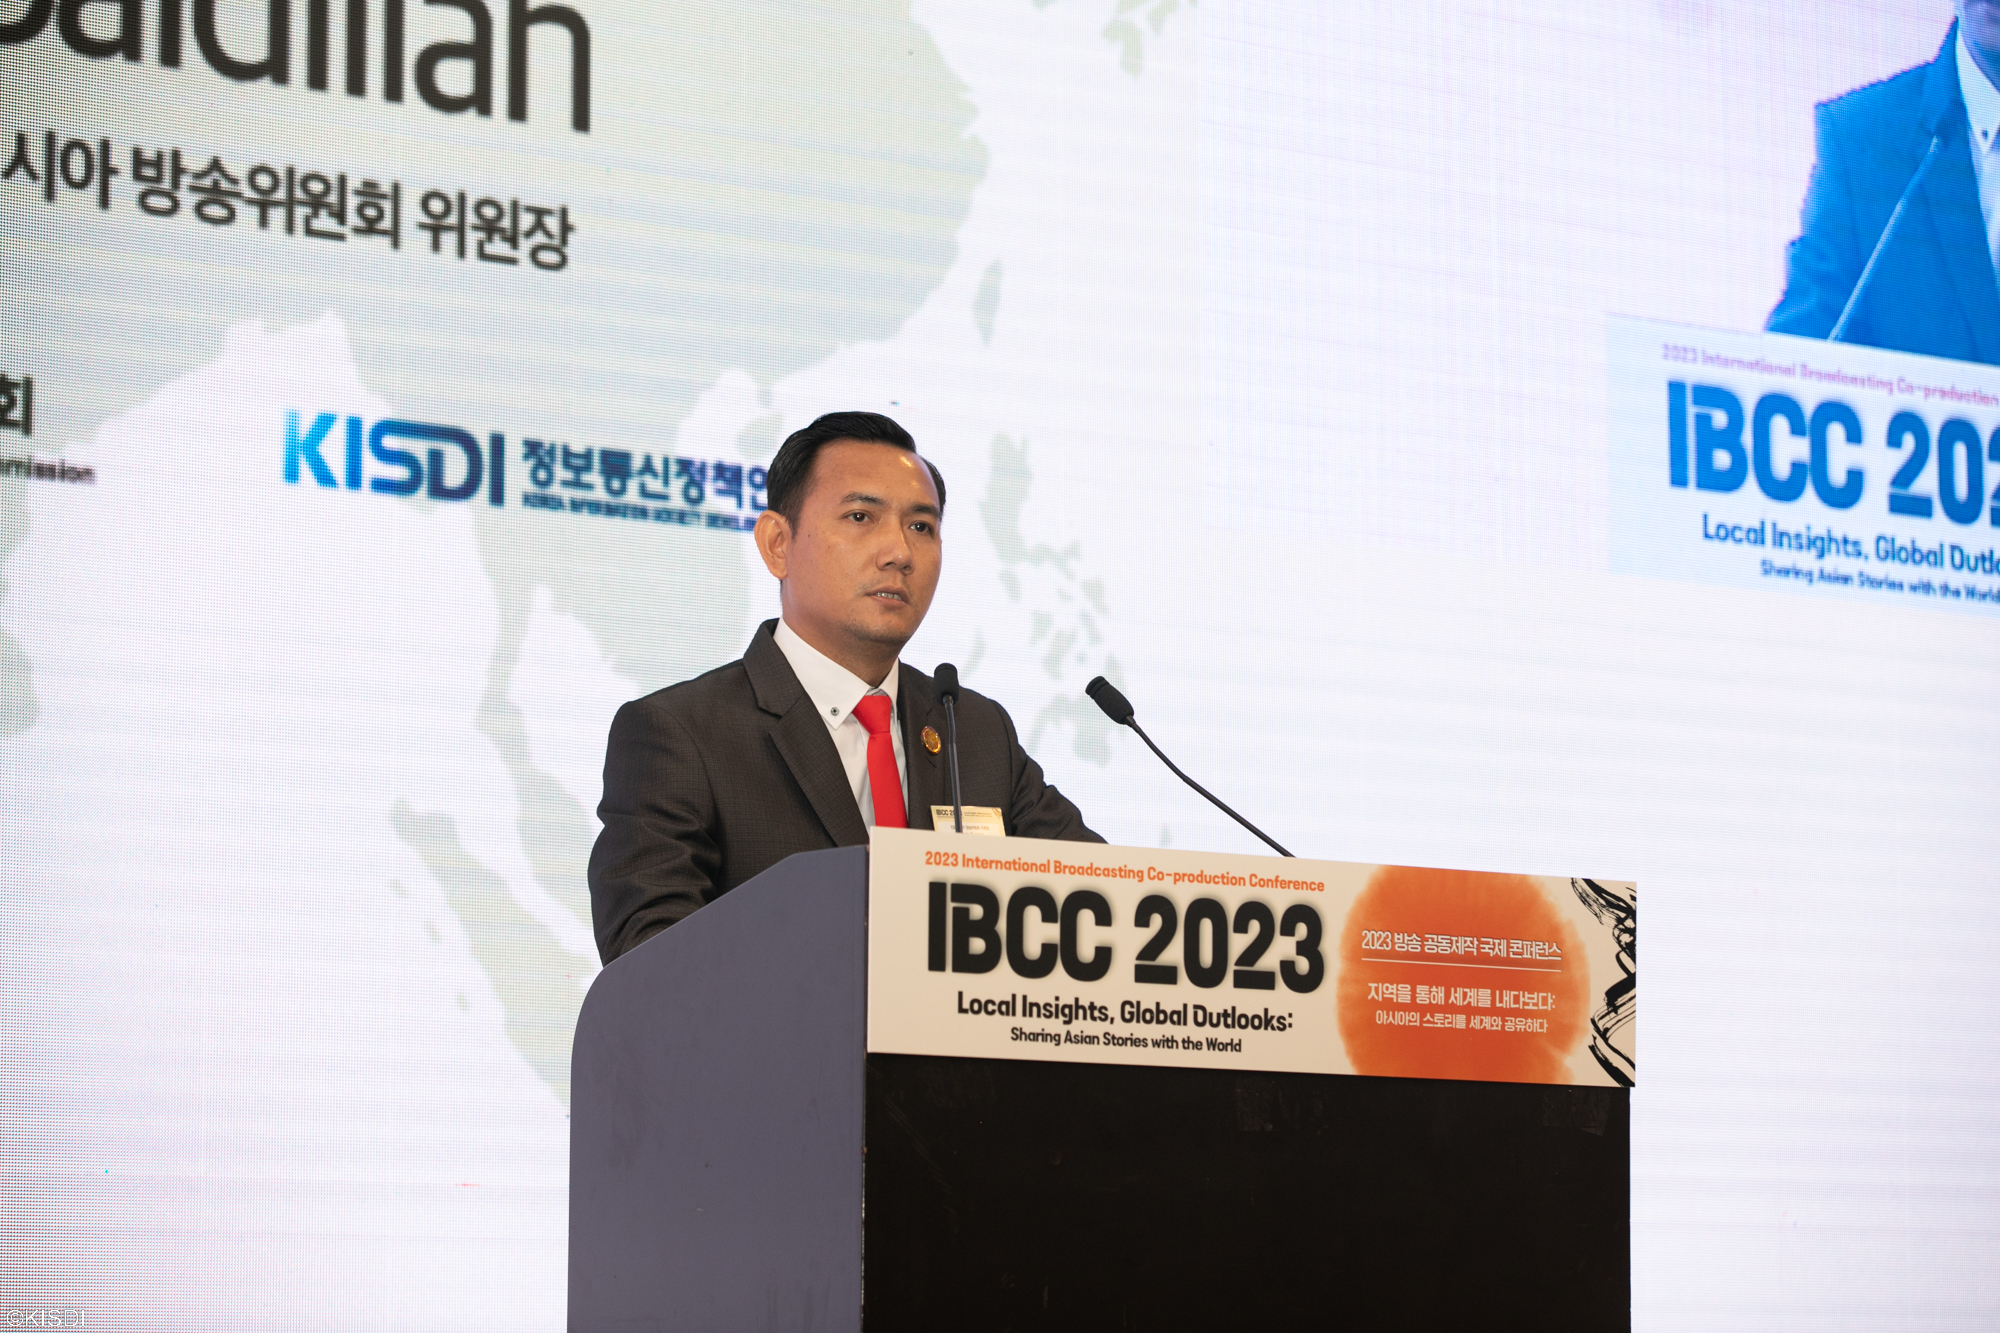 2023 방송 공동제작 국제 콘퍼런스